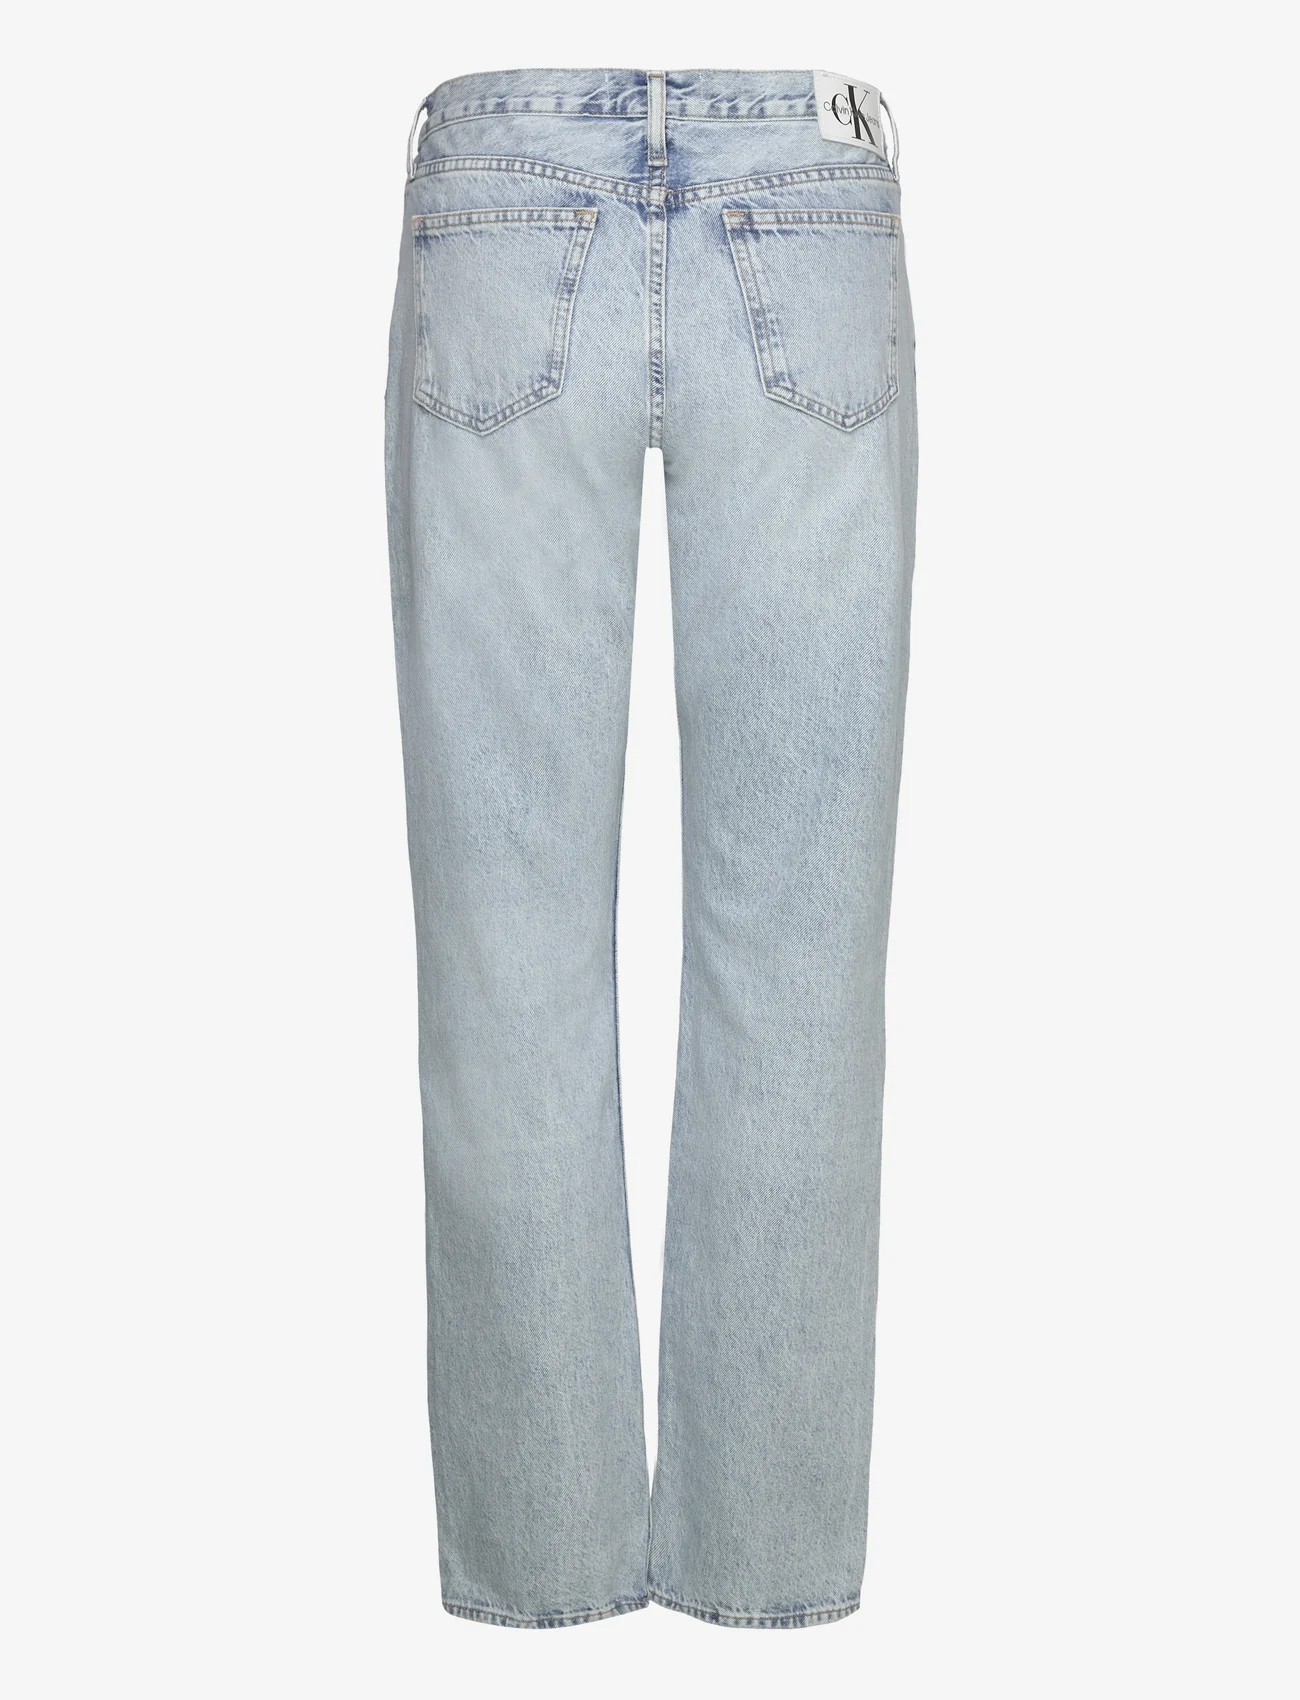 Calvin Klein Jeans - LOW RISE STRAIGHT - tiesaus kirpimo džinsai - denim light - 1